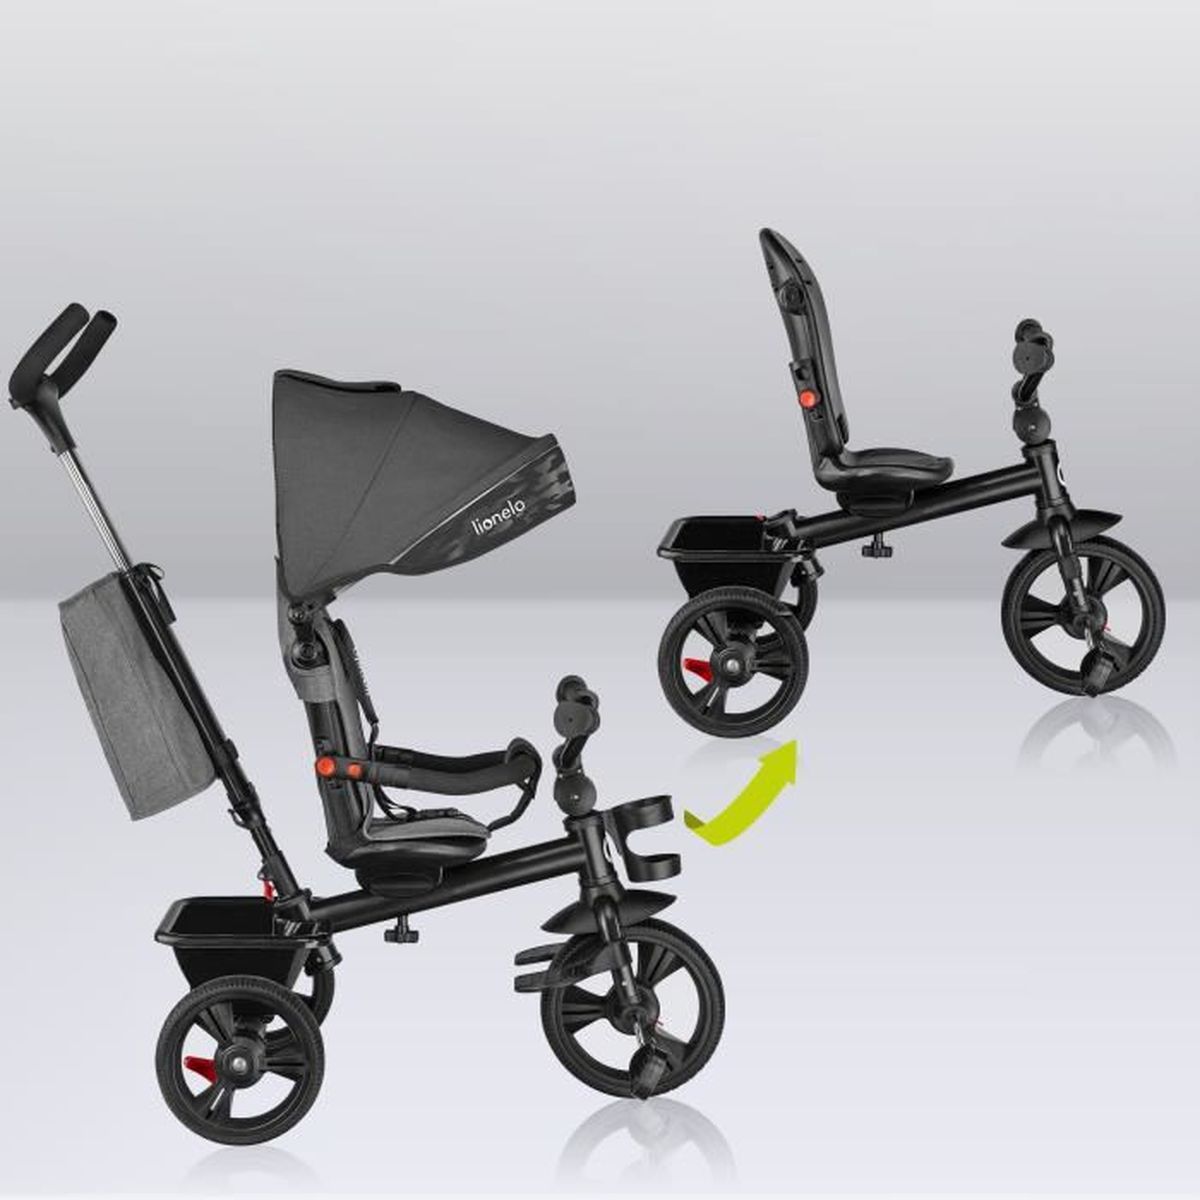 Tricycle pour enfant OHMG - 3 en 1 avec barre de poussée - Rouge - Capacité  de poids 15 kg - À partir de 18 mois - Cdiscount Sport